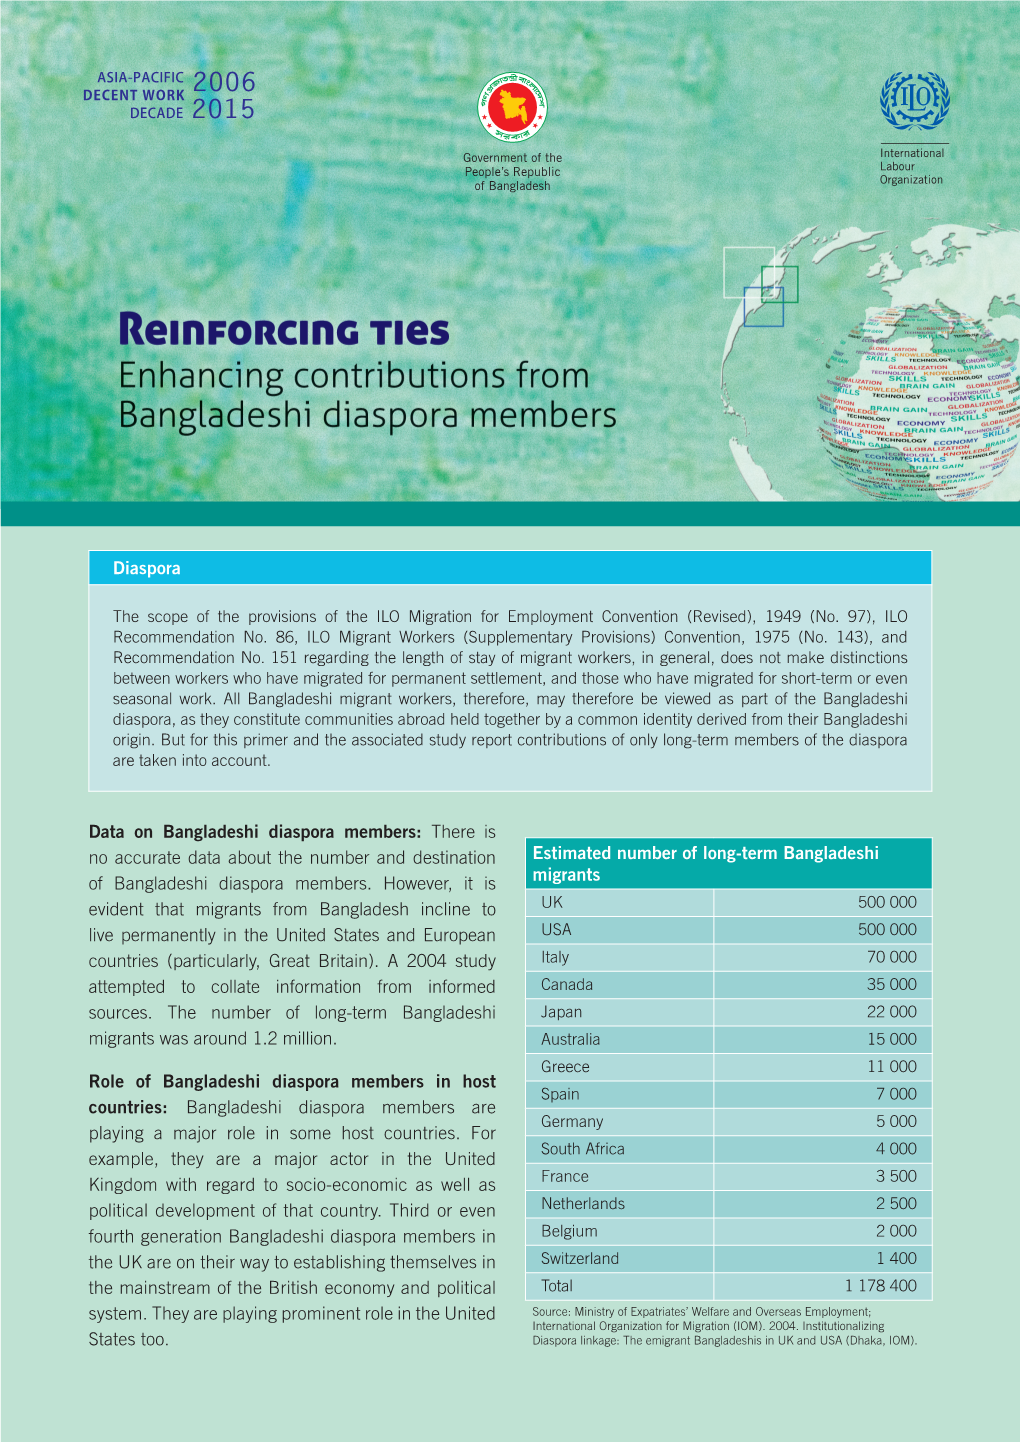 Diaspora Data on Bangladeshi Diaspora Members